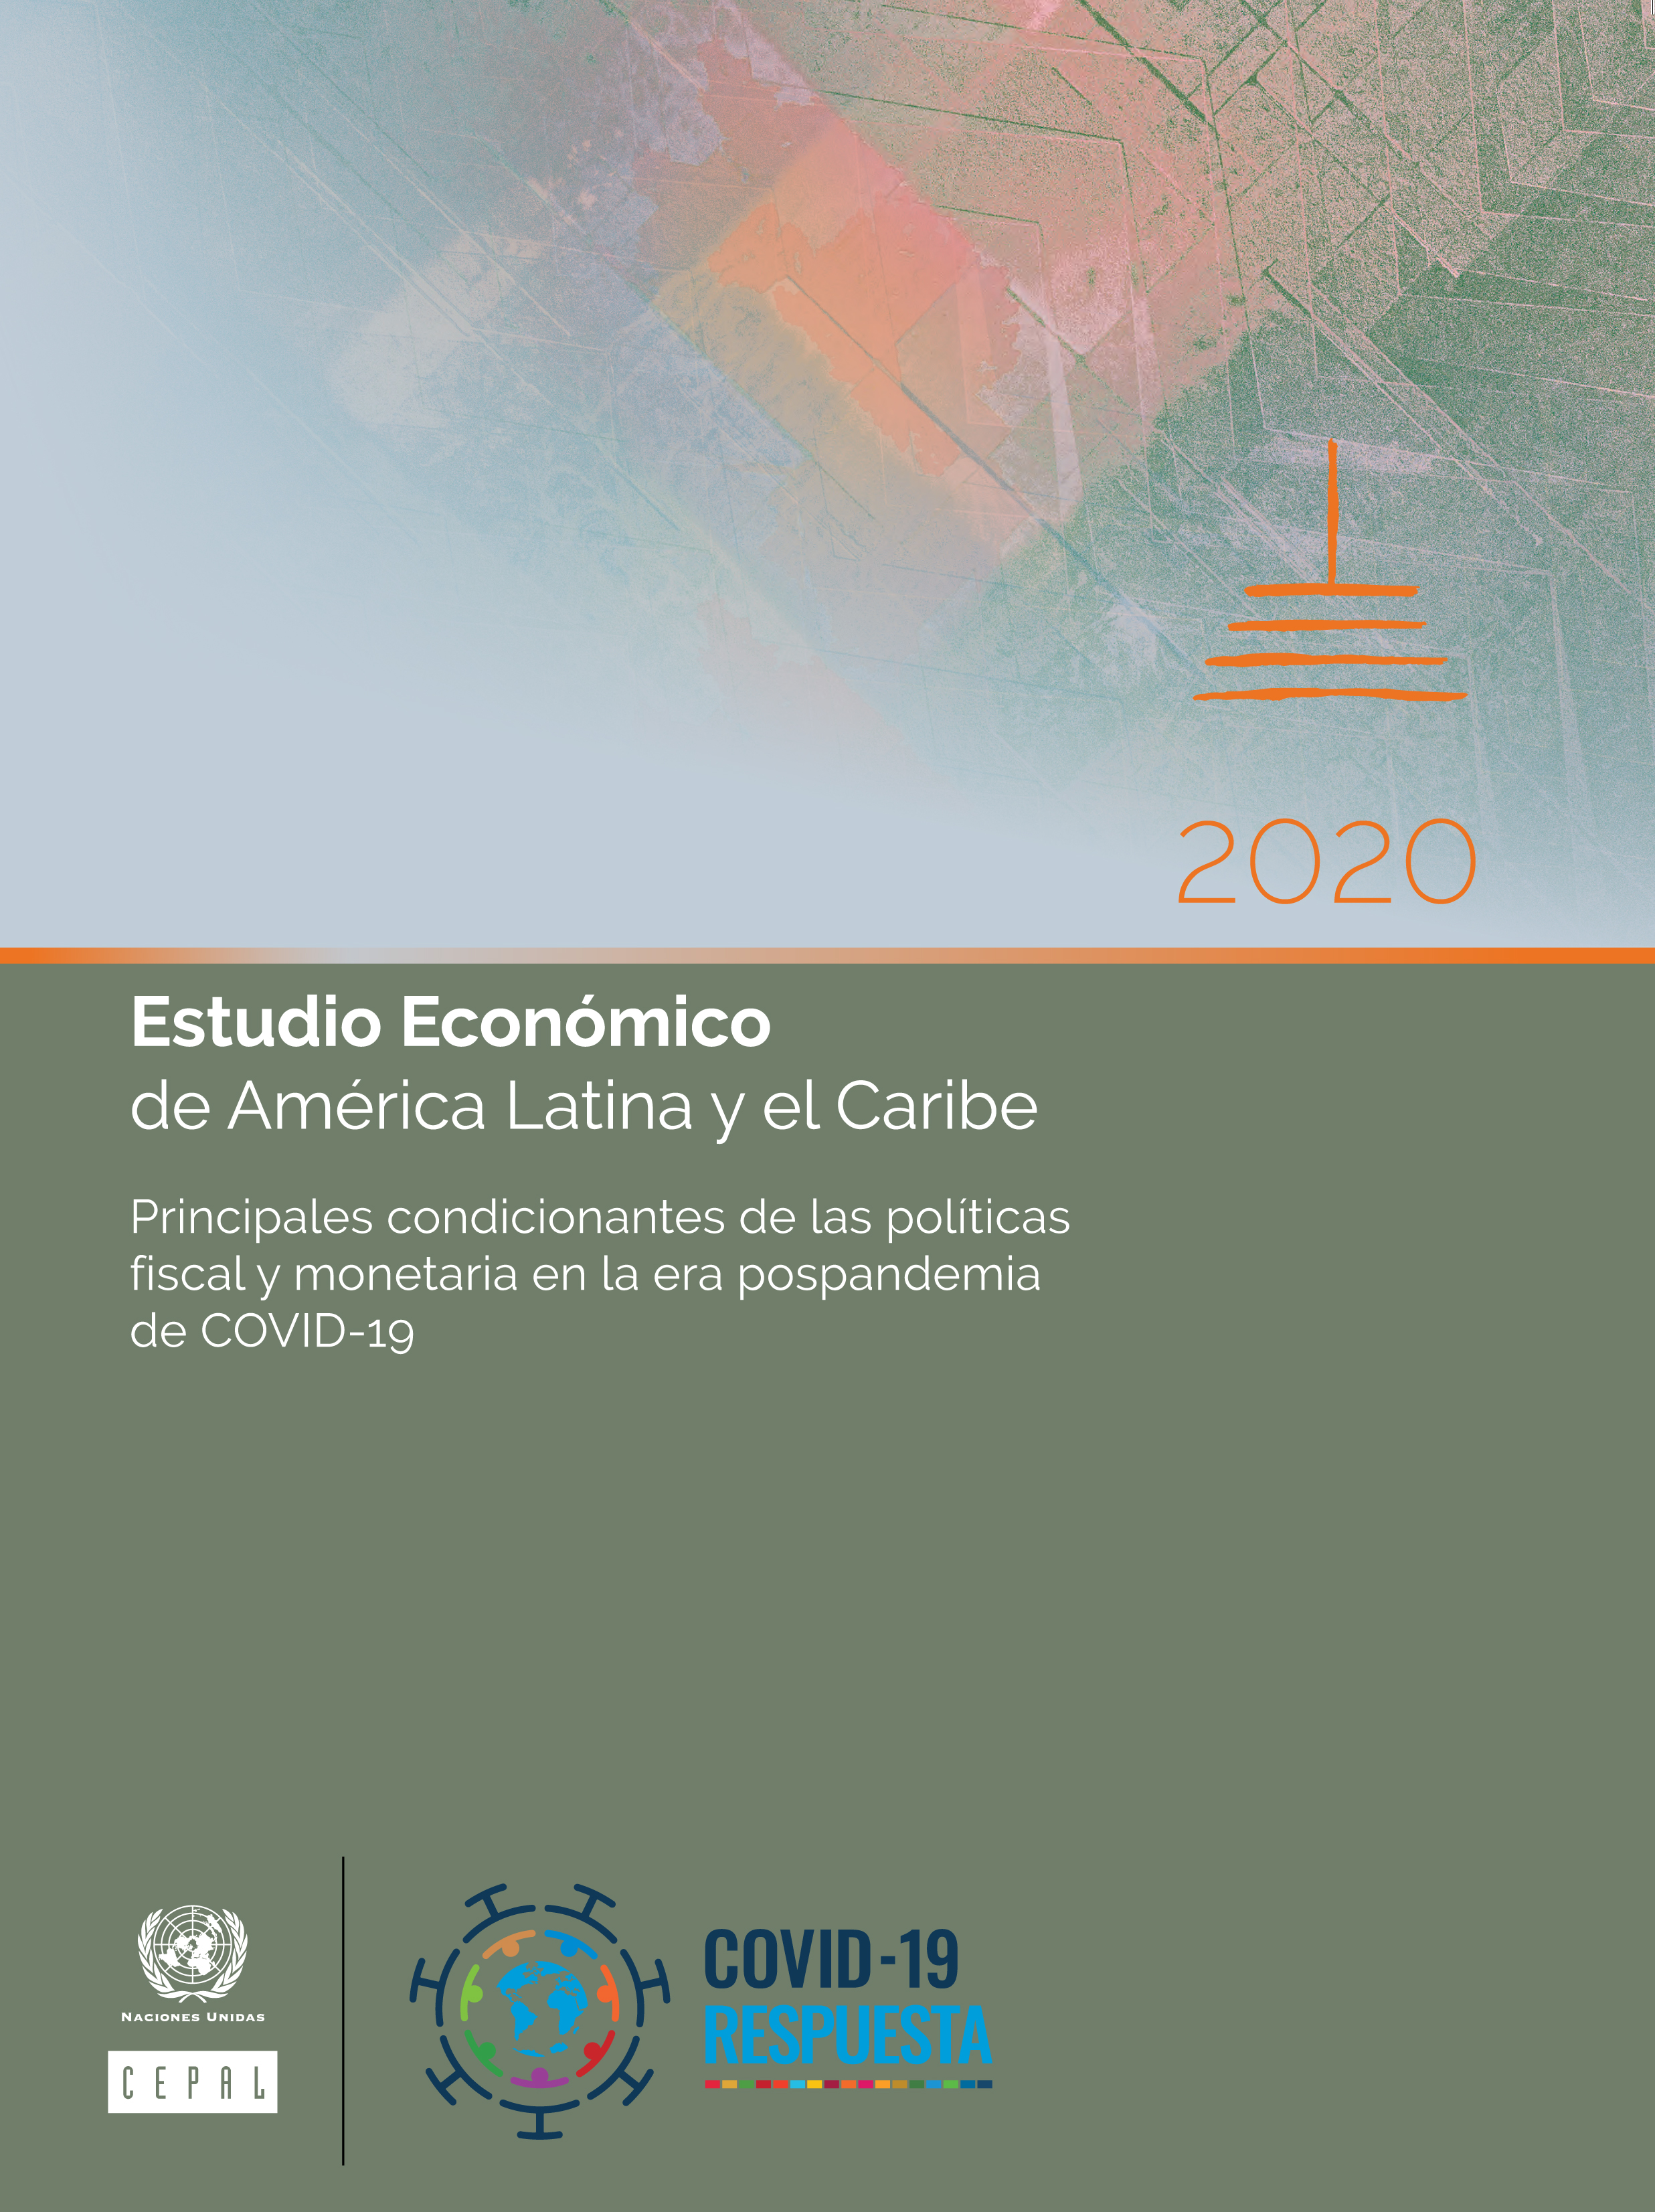 image of Estudio Económico de América Latina y el Caribe 2020